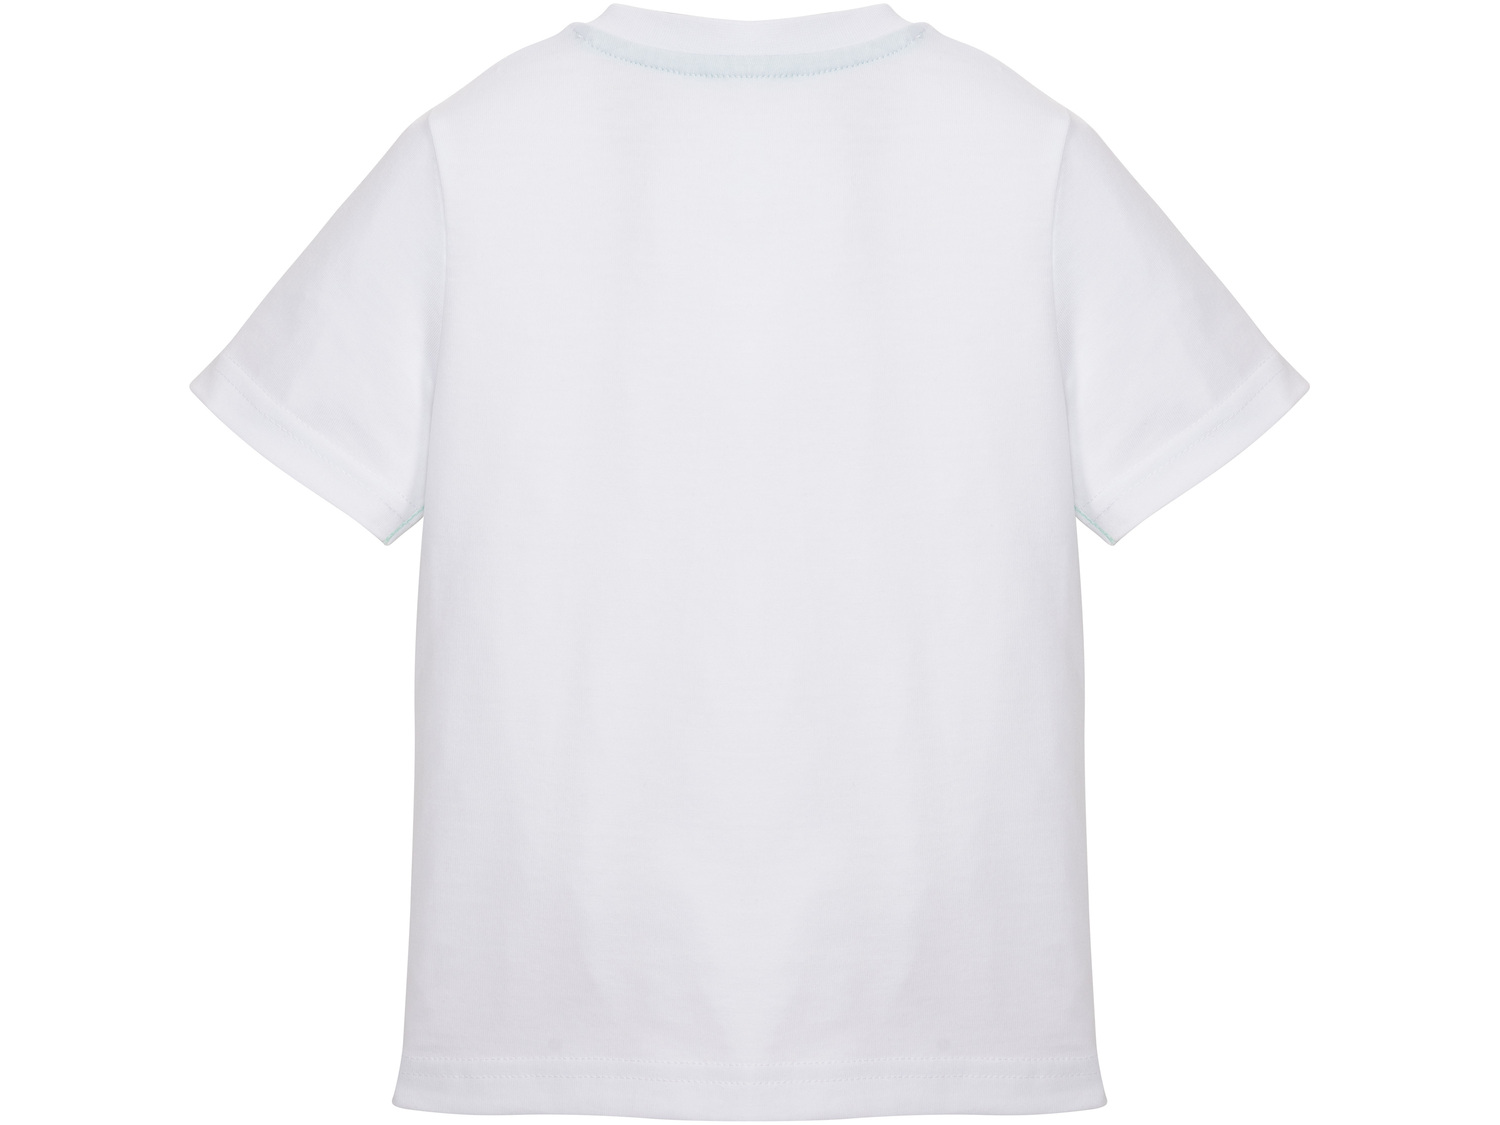 T-shirt chłopięcy Lupilu, cena 7,99 PLN 
- 100% bawełny
- rozmiary: 86-116
Dostępne ...